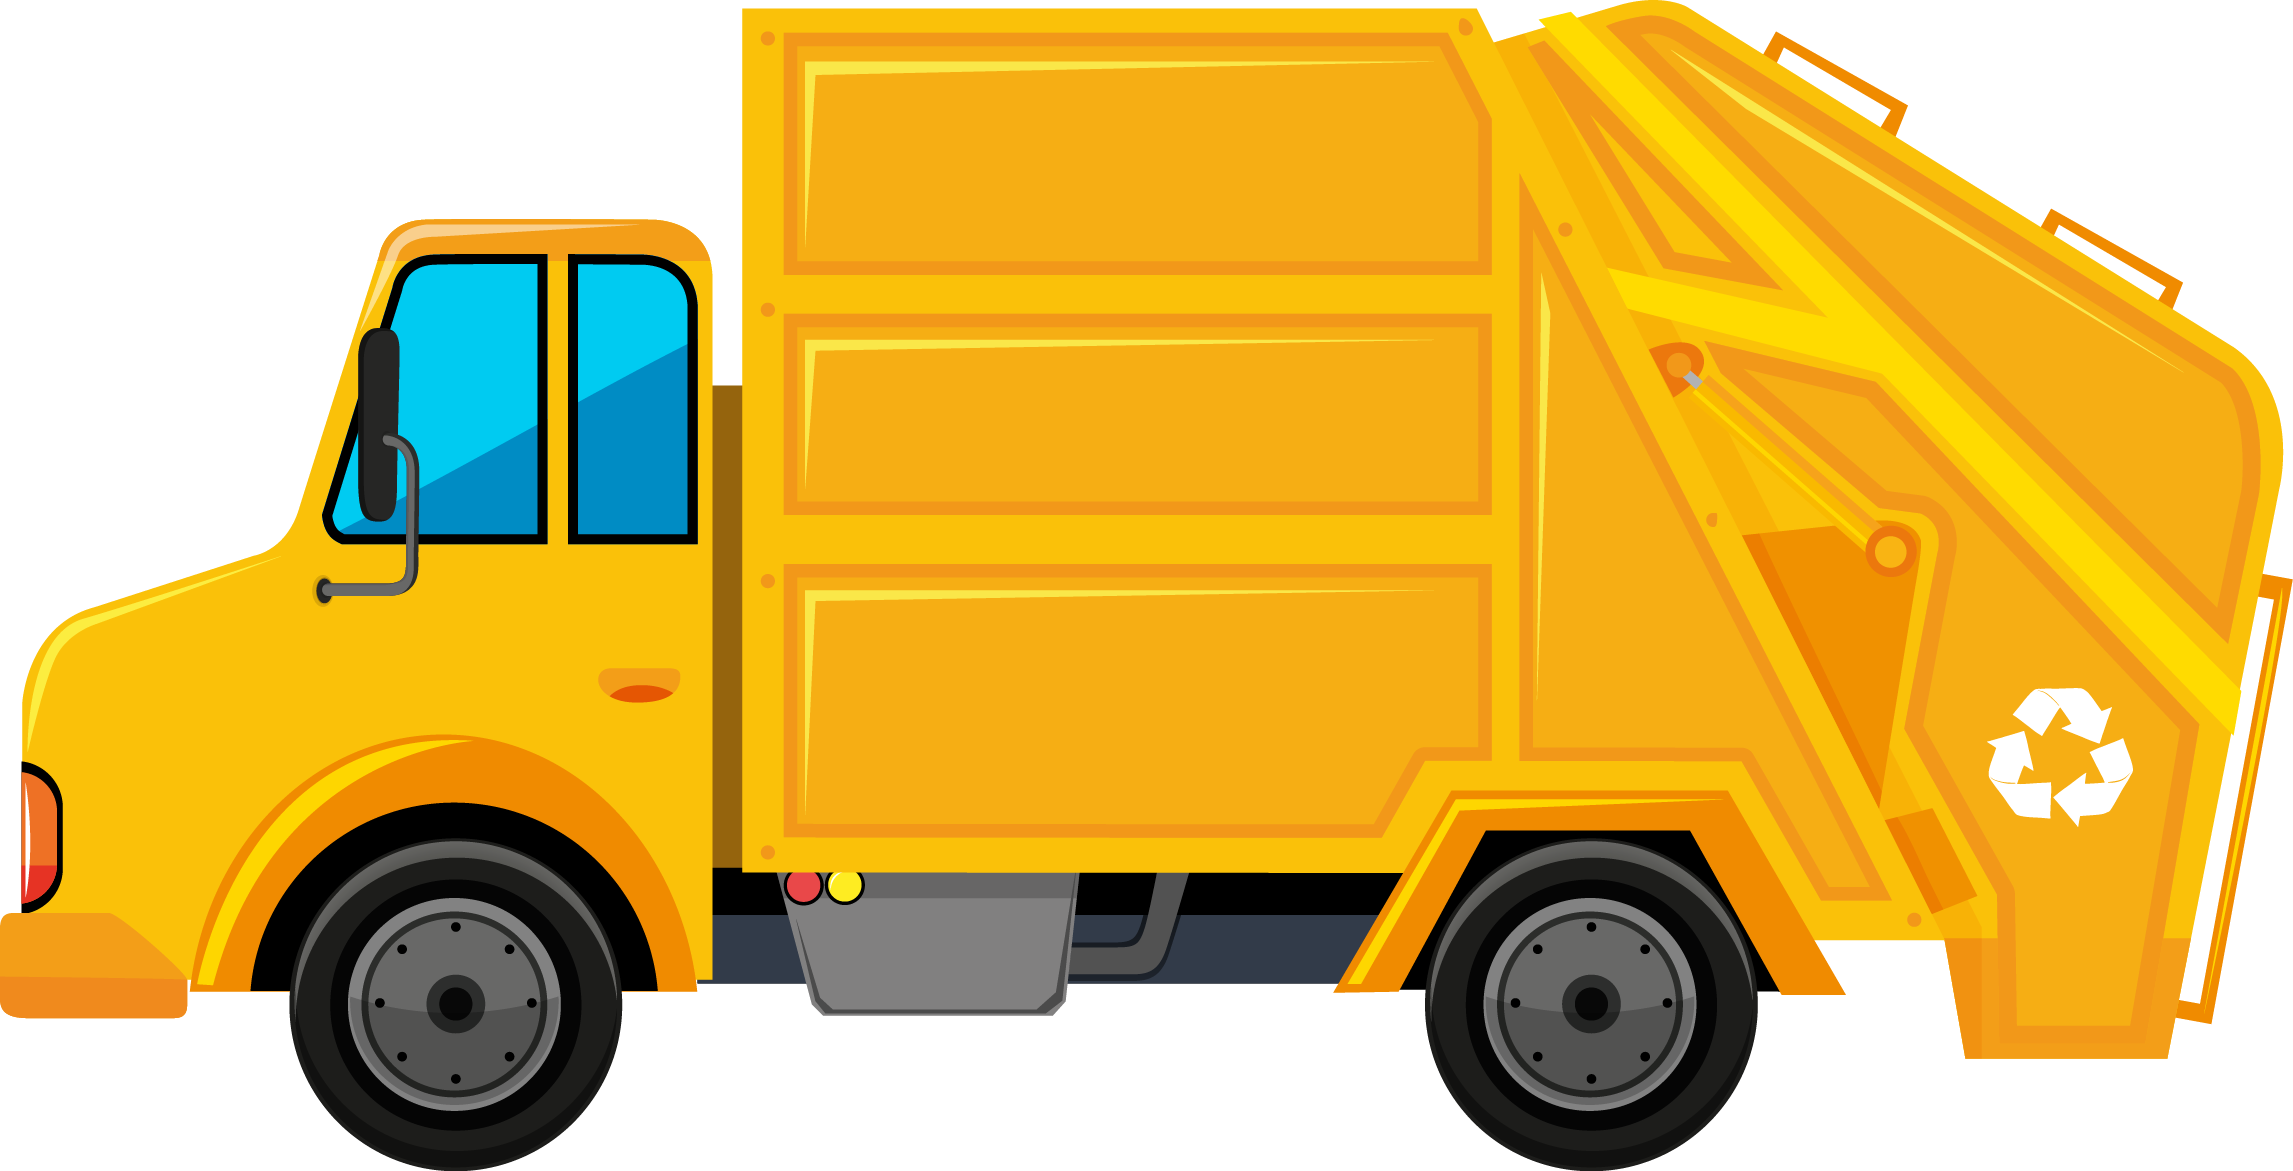 Garbage clipart garbage truck, Garbage garbage truck Transparent FREE